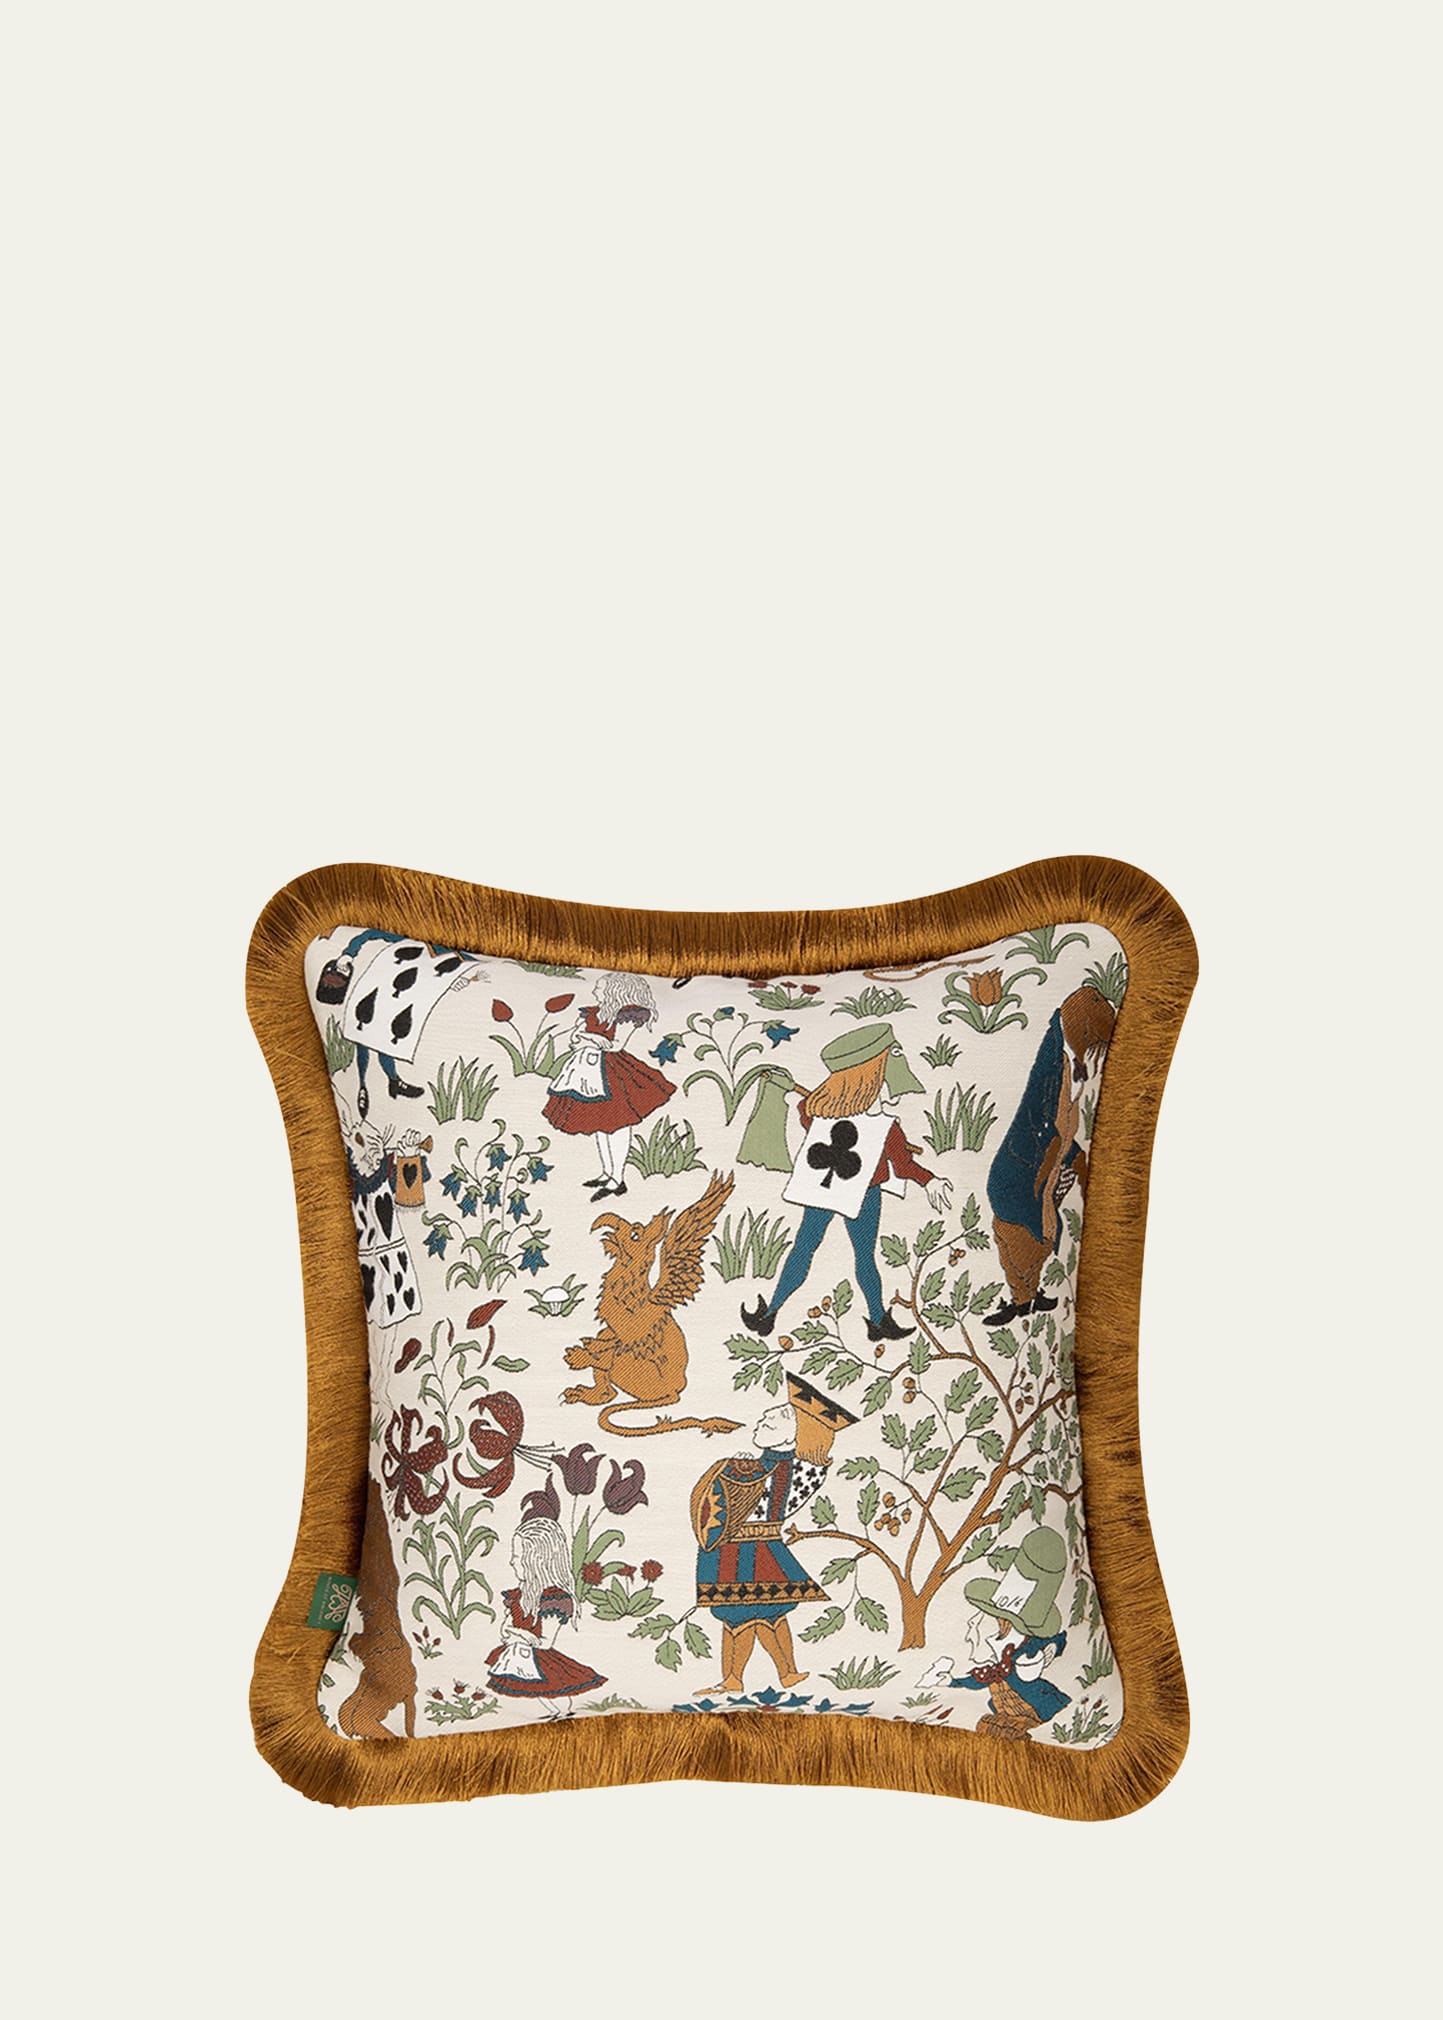 Alice in Wonderland Fringed Jacquard Cushion, 18" Square